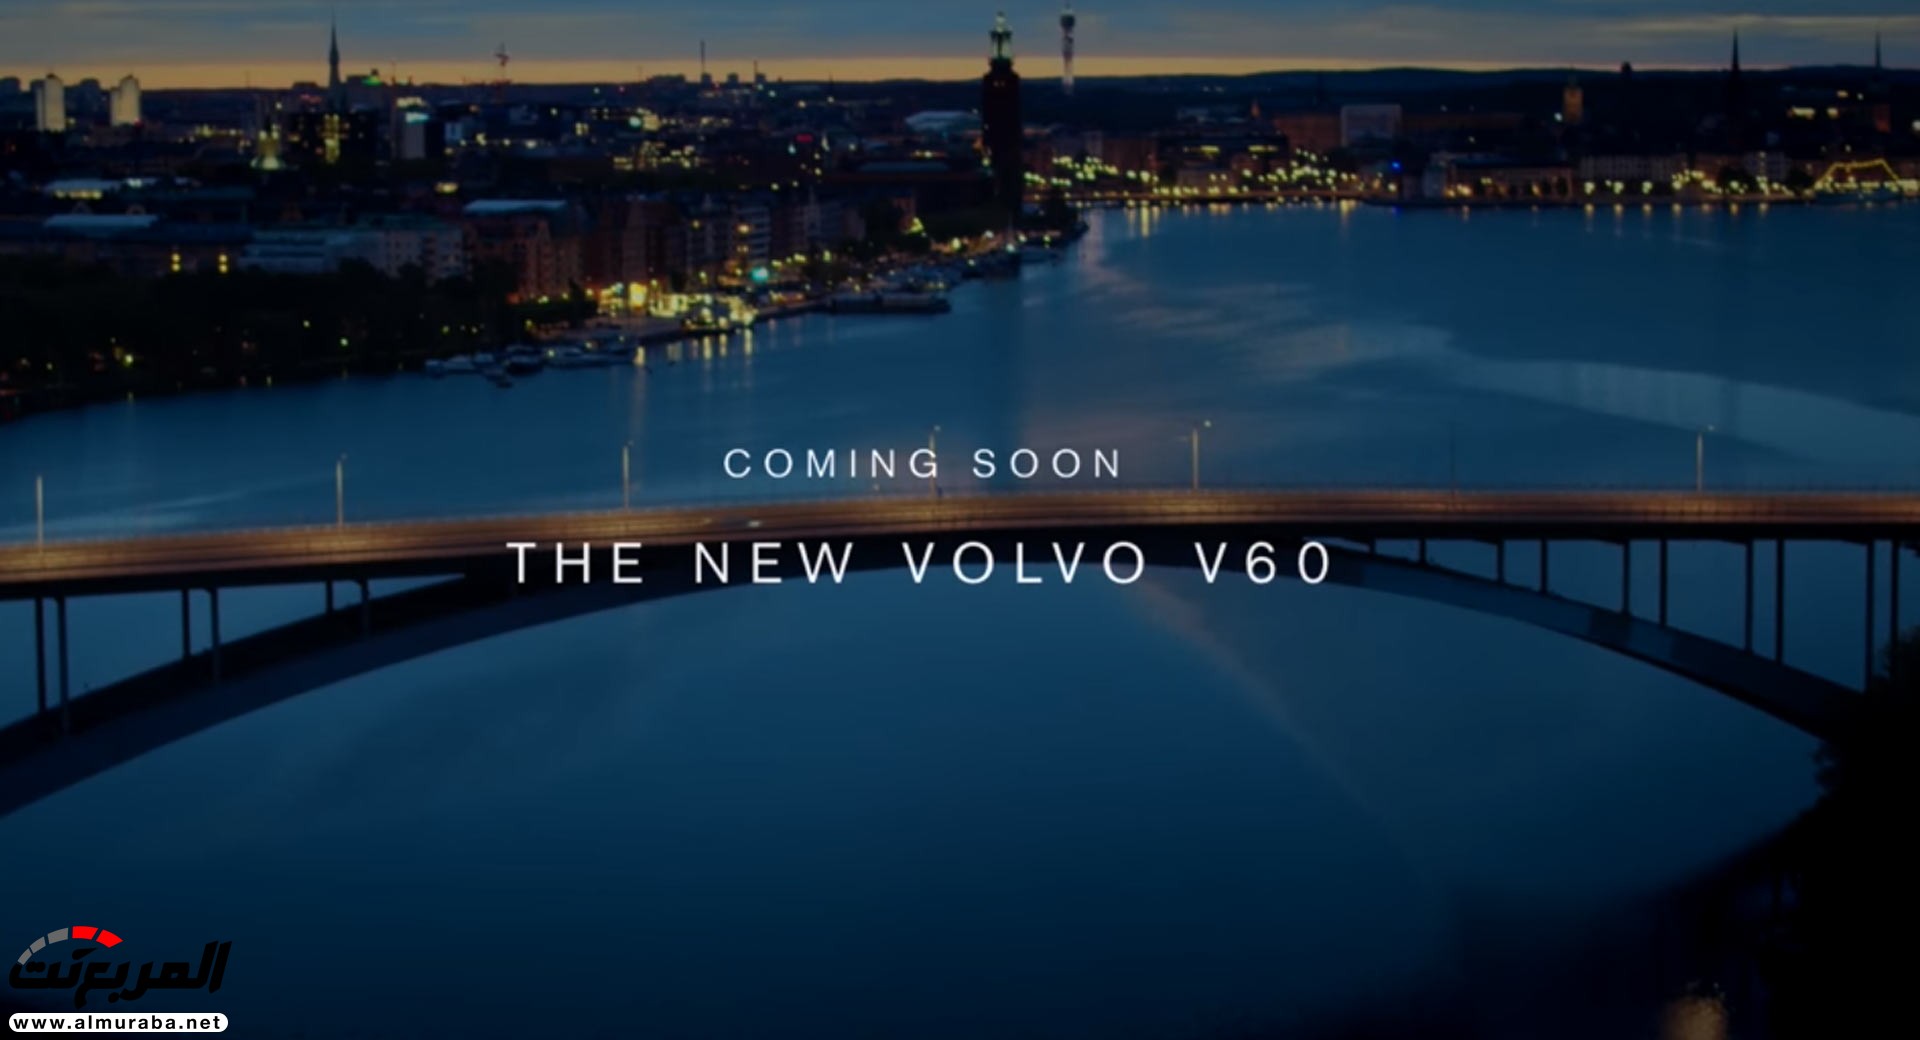 تسريب صور فولفو V60 2019 الجديدة كلياً قبل الكشف عنها رسمياً 7